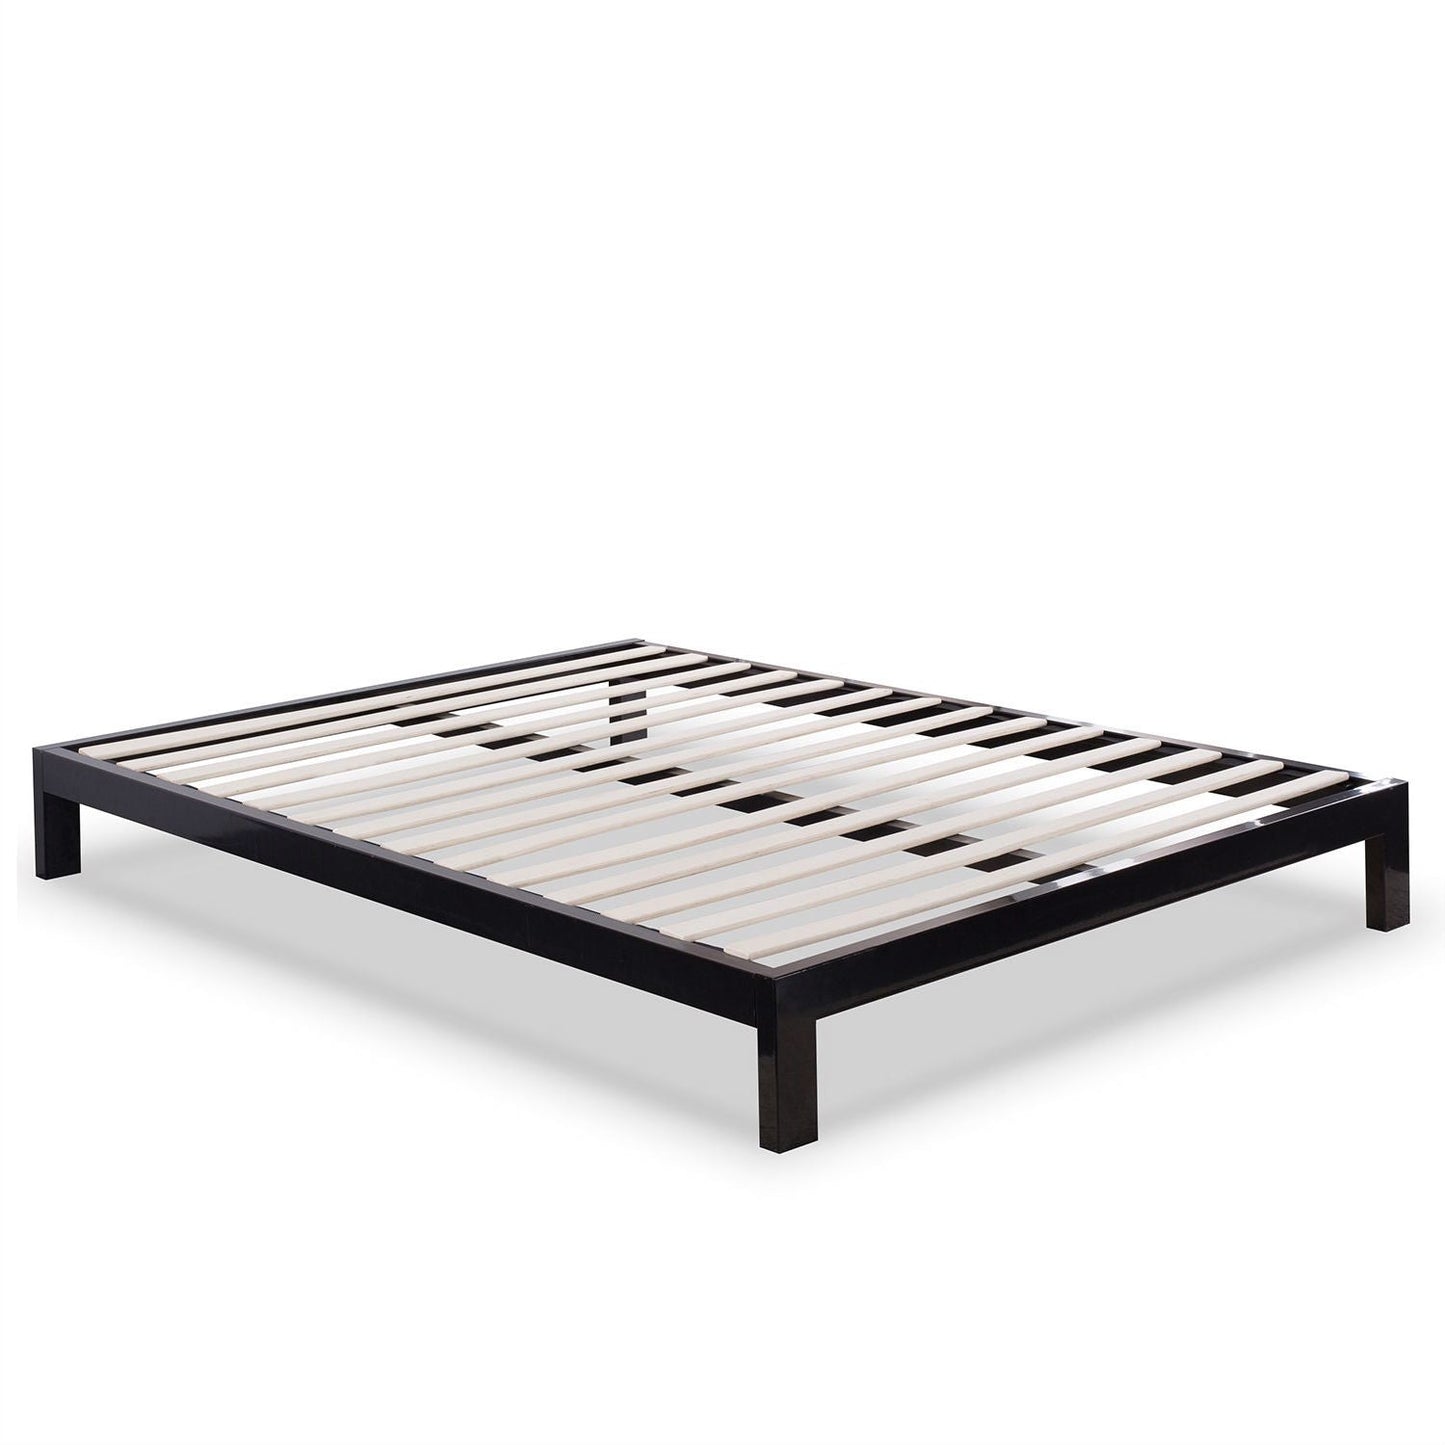 Bedroom > Bed Frames > Platform Beds - Queen Modern Black Metal Platform Bed Frame With Wooden Slats